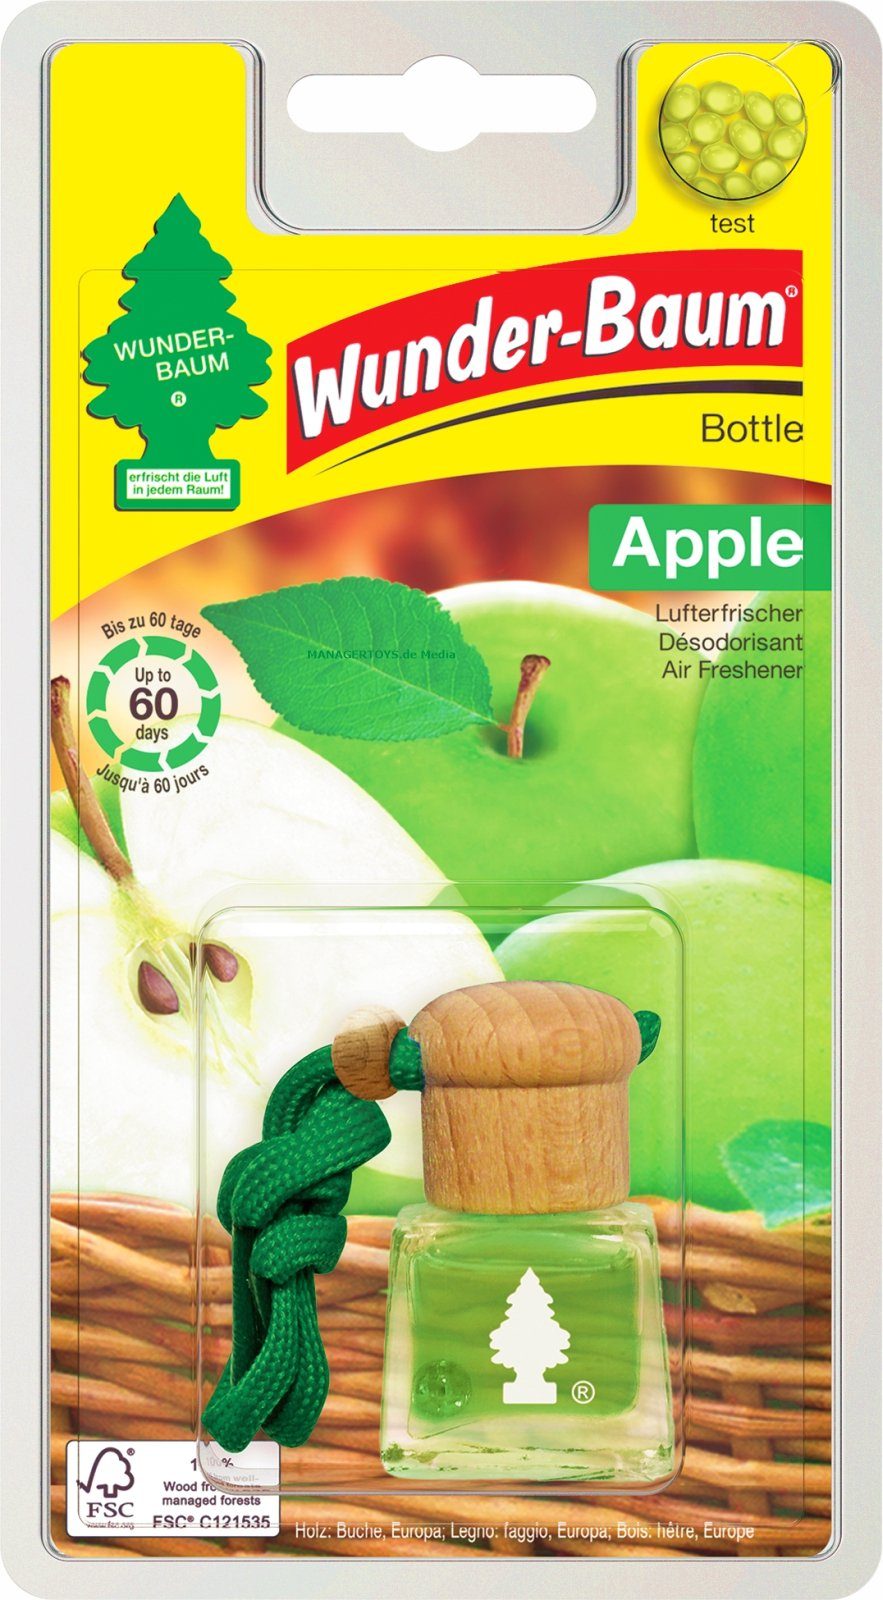 Wunder-Baum Duft-Set Bottle Duft Flakon Apple WUNDERBAUM Lufterfrischer 4,5 ml Apfel